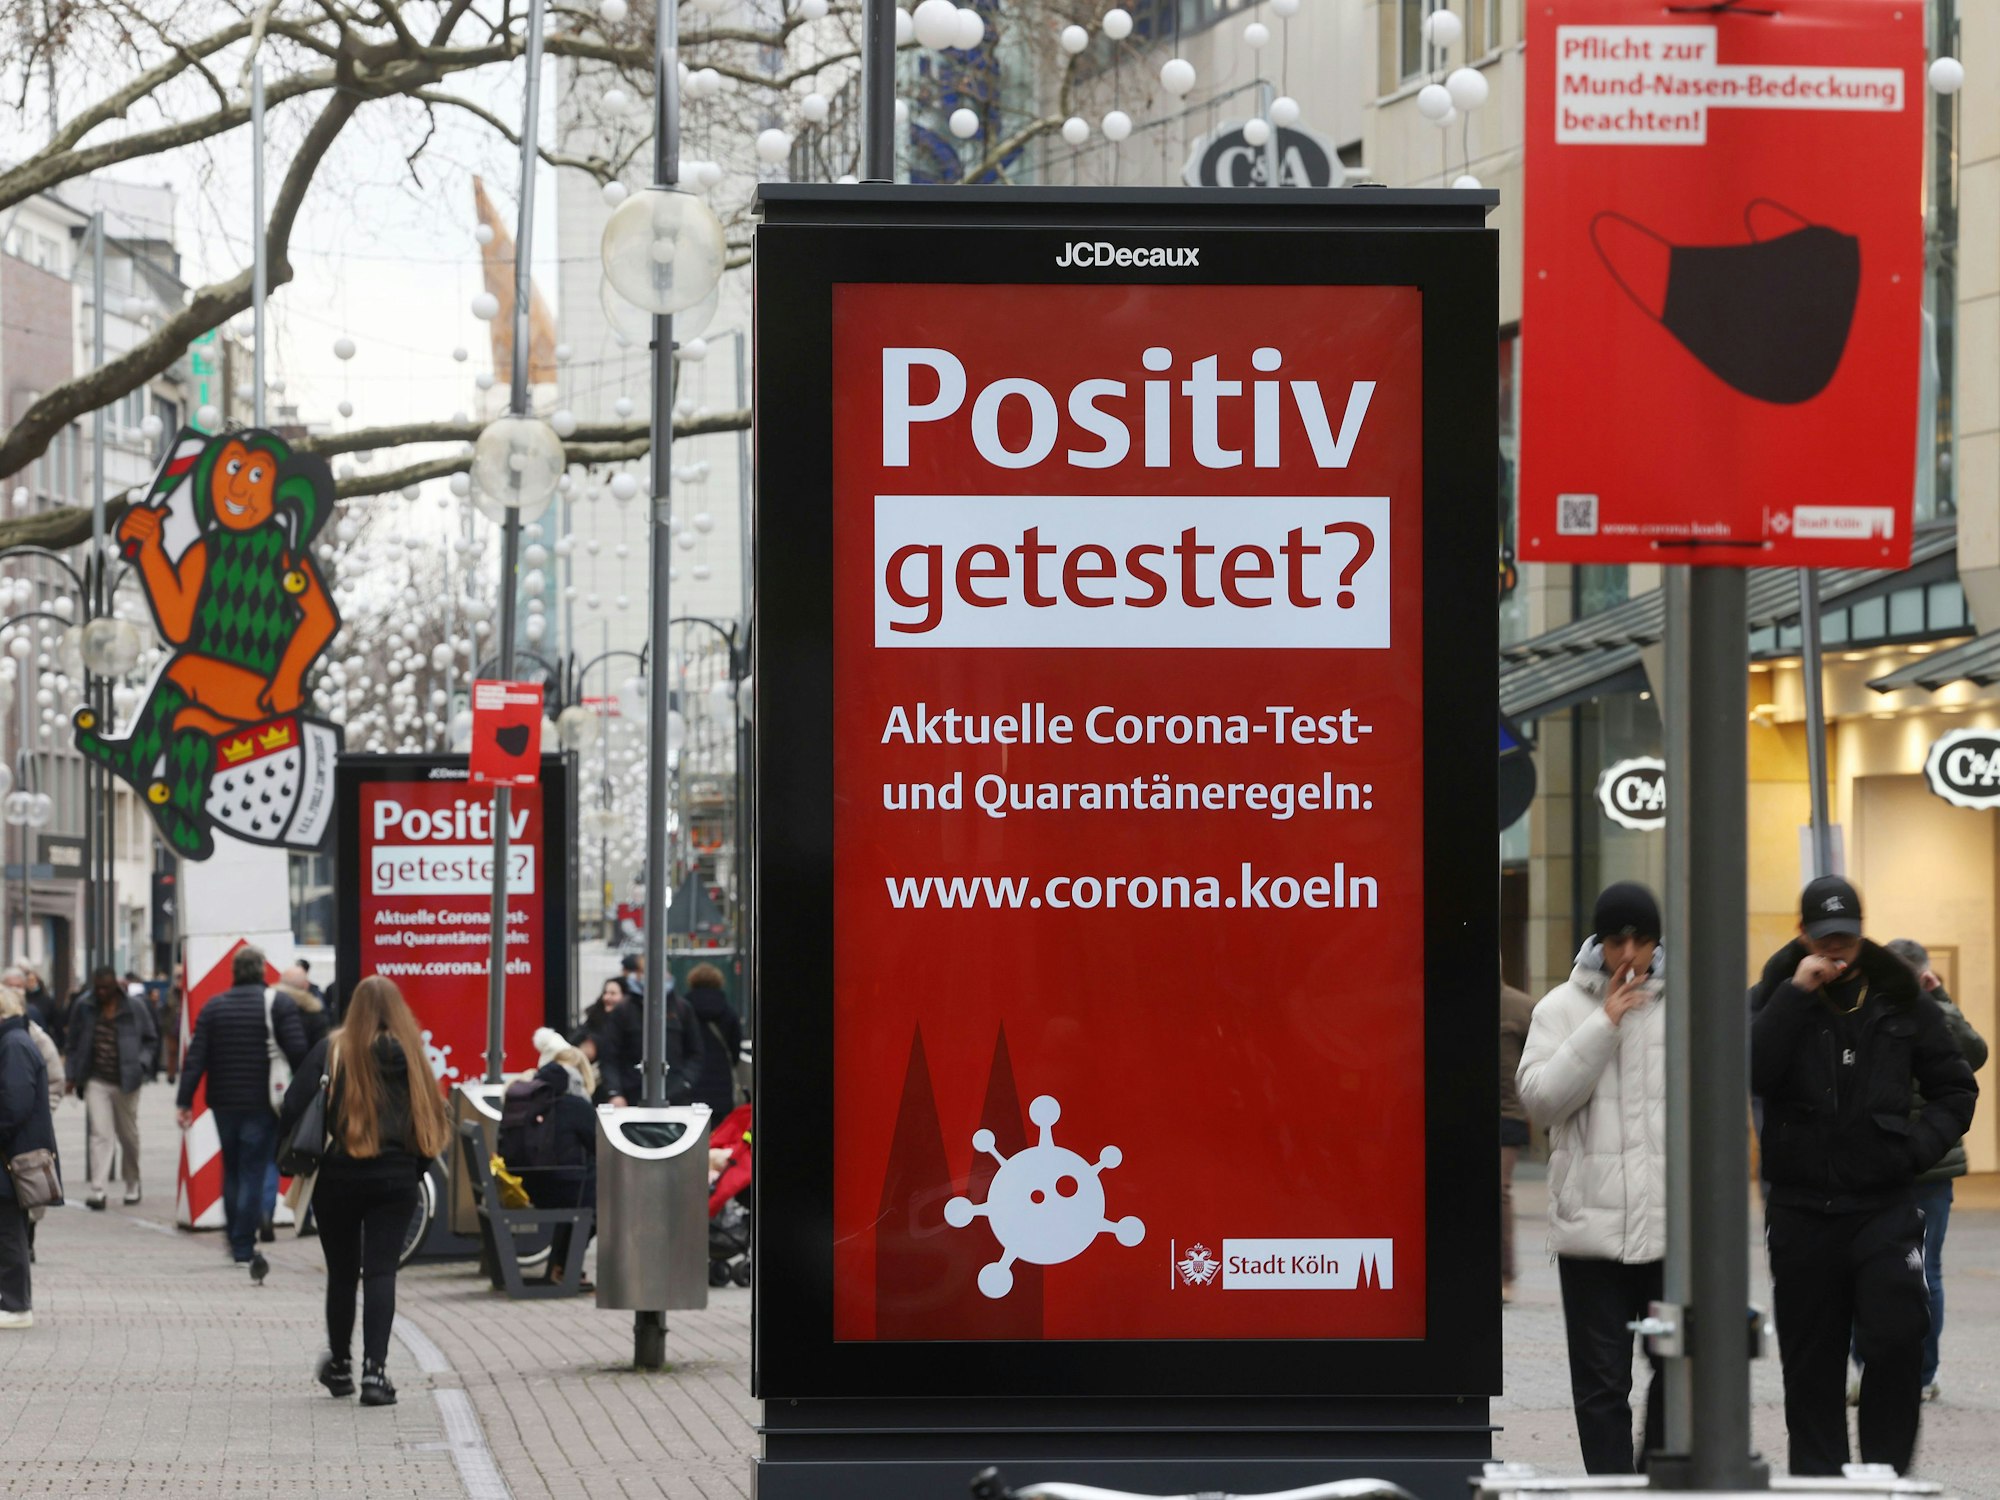 Menschen gehen an einer elektronischen Werbetafel mit der Aufschrift "Positiv getestet?" in der Kölner Innenstadt vorbei.